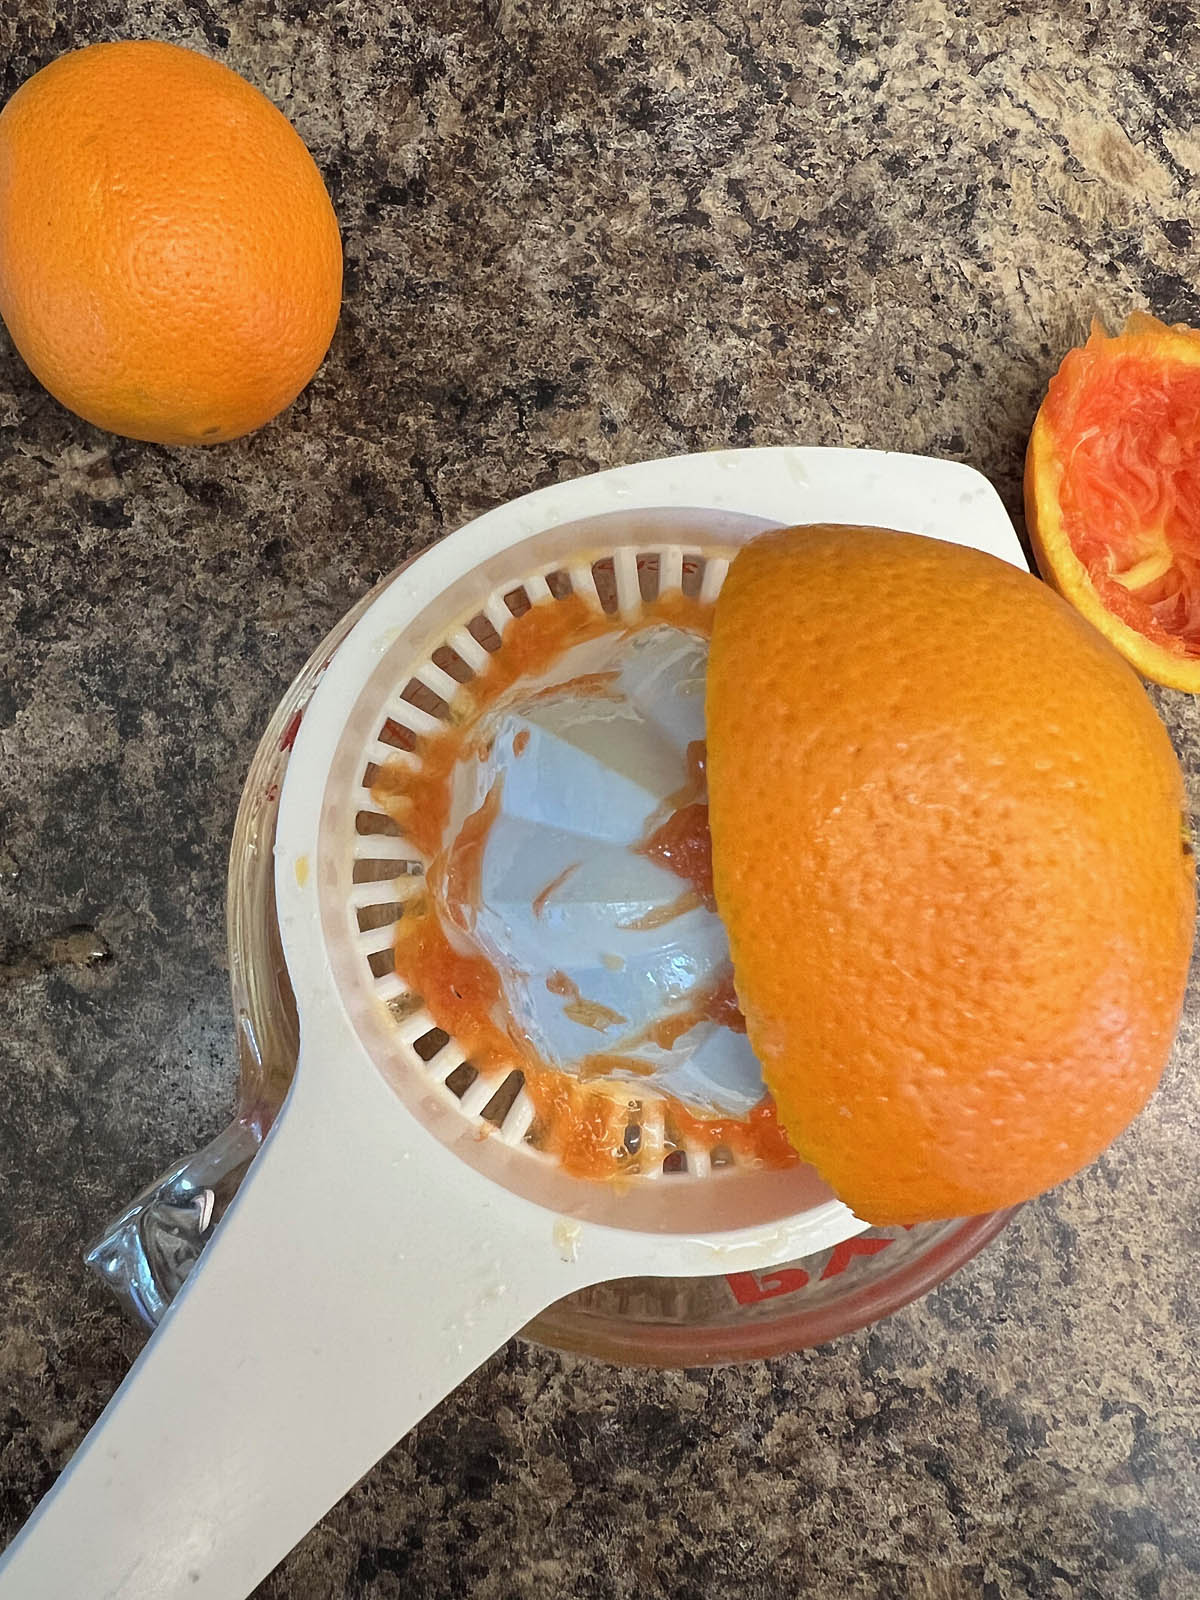 Orange being juiced.